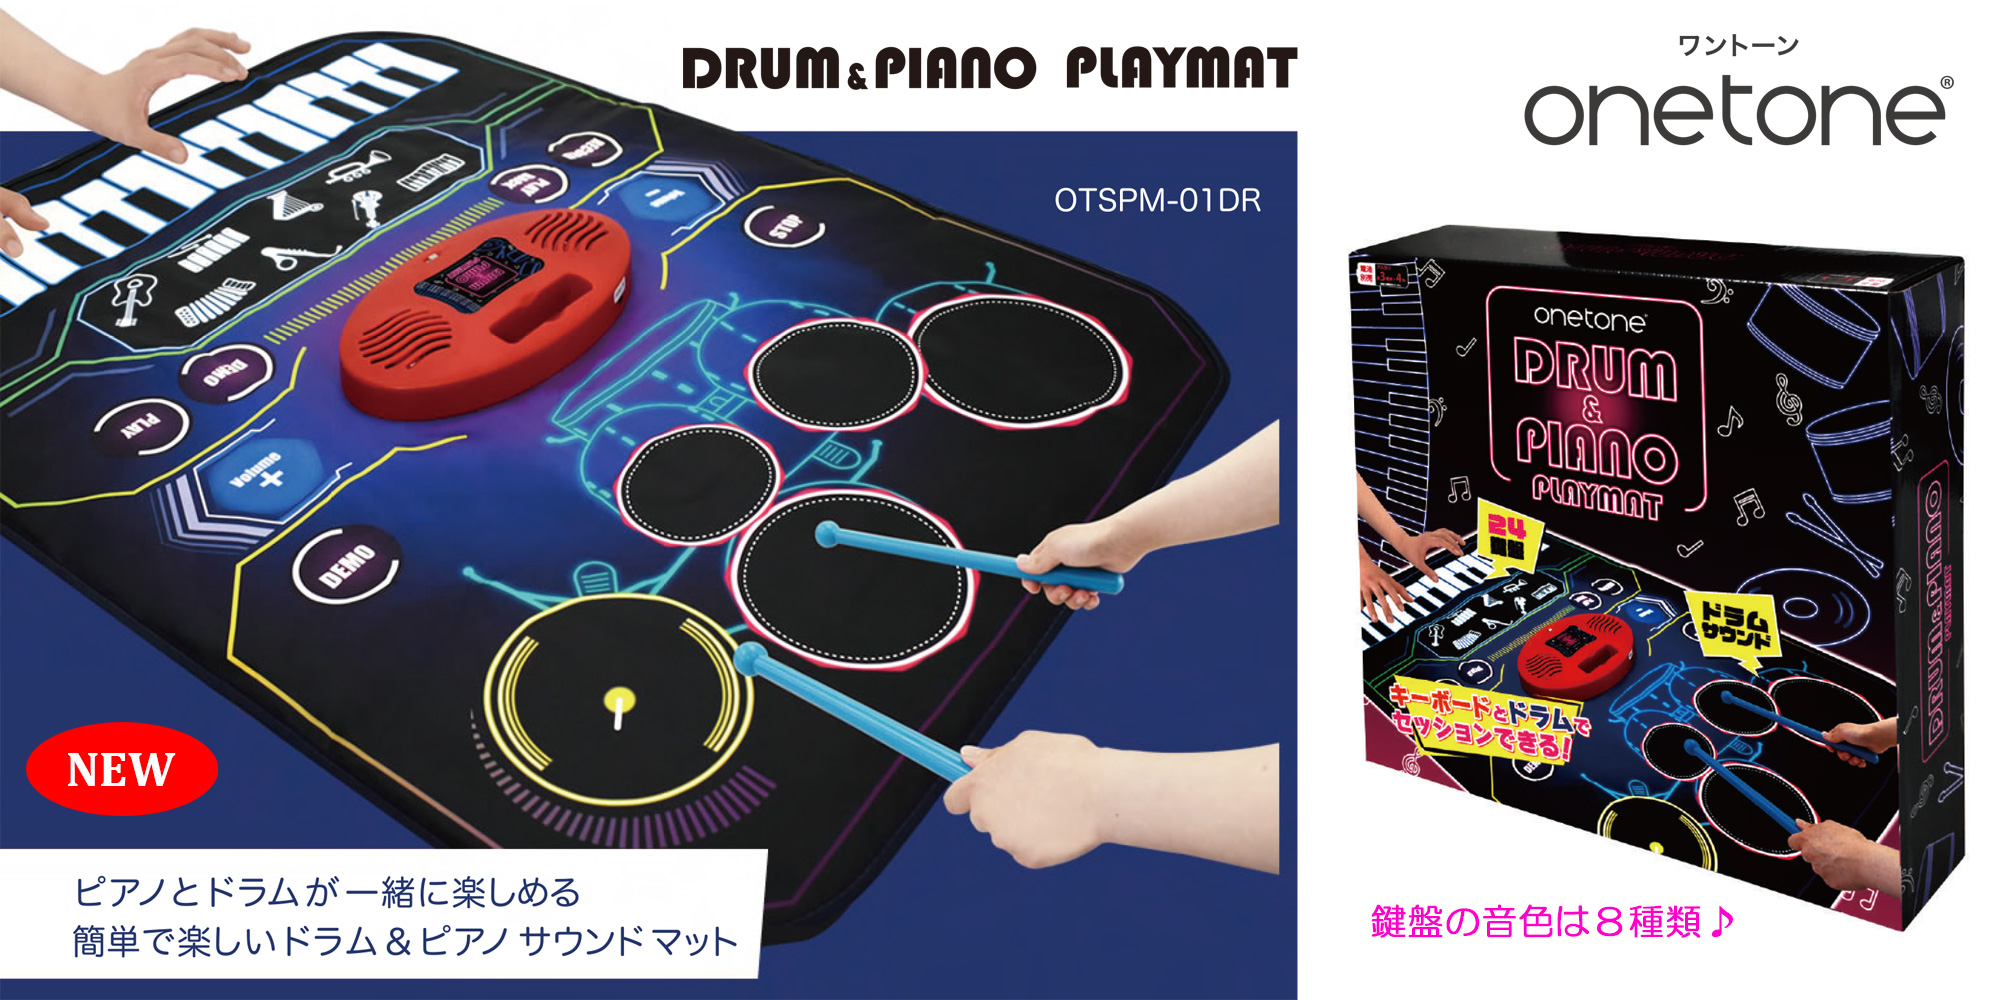 ONETONE 新製品 ドラム＆ピアノ・プレイマット